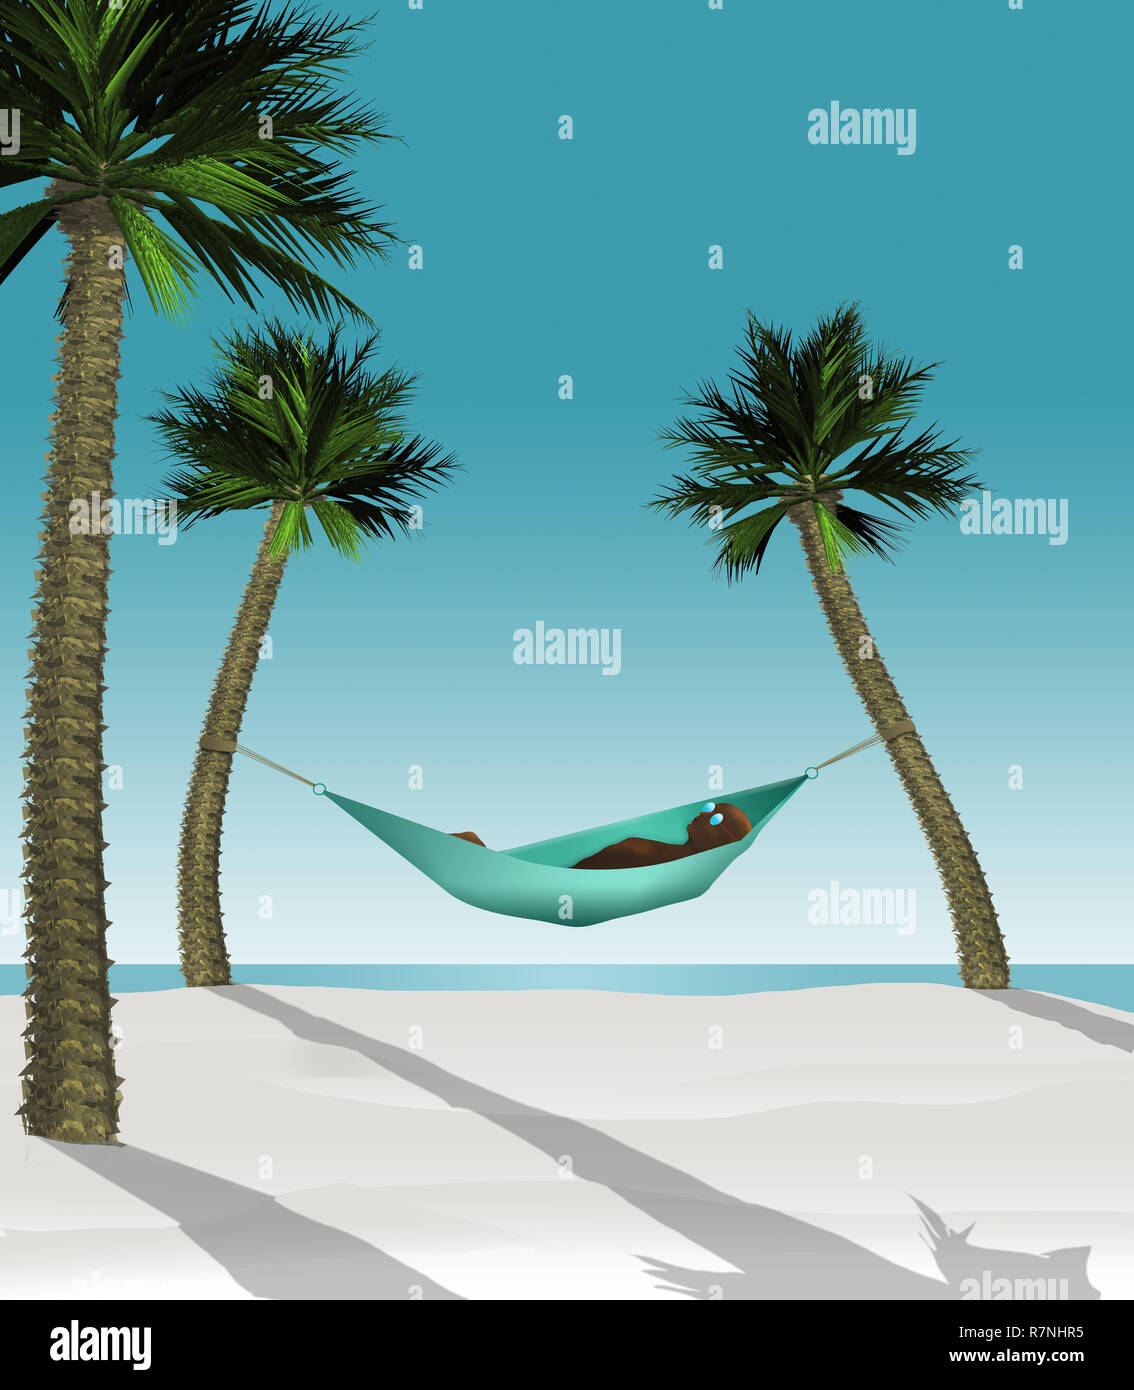 Hier ist ein 3-D-Abbildung eines Mannes liegen in einer Hängematte zwischen zwei kleine Palmen an einem tropischen Strand mit weißem Sand machen. Dies ist ein Illu Stockfoto